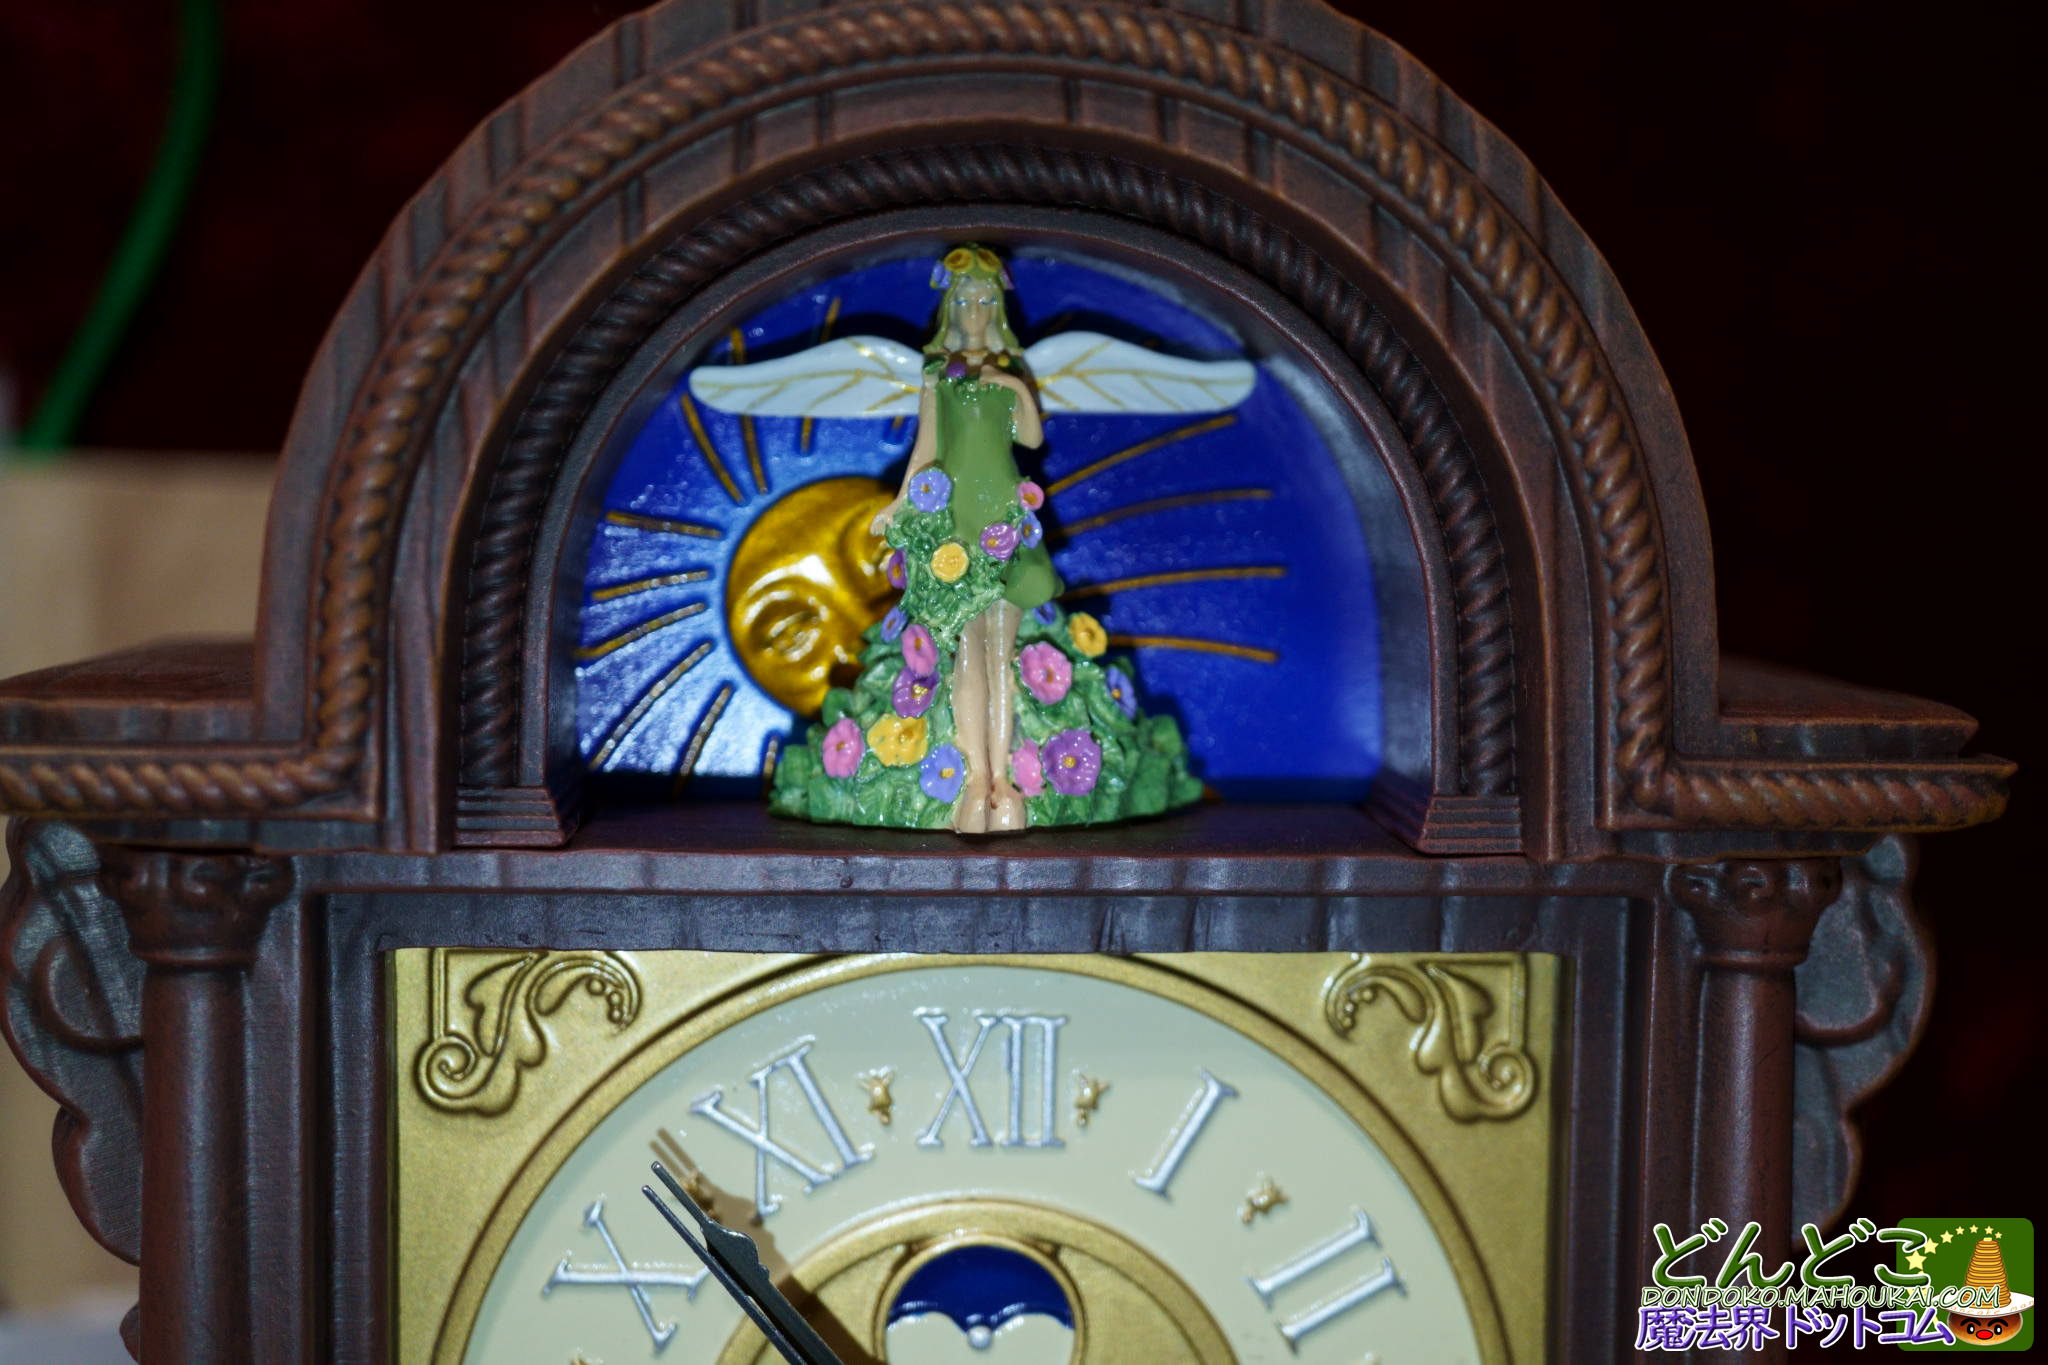 隠れスポット】ジブリパーク「地球屋」の古時計は「耳をすませば」の